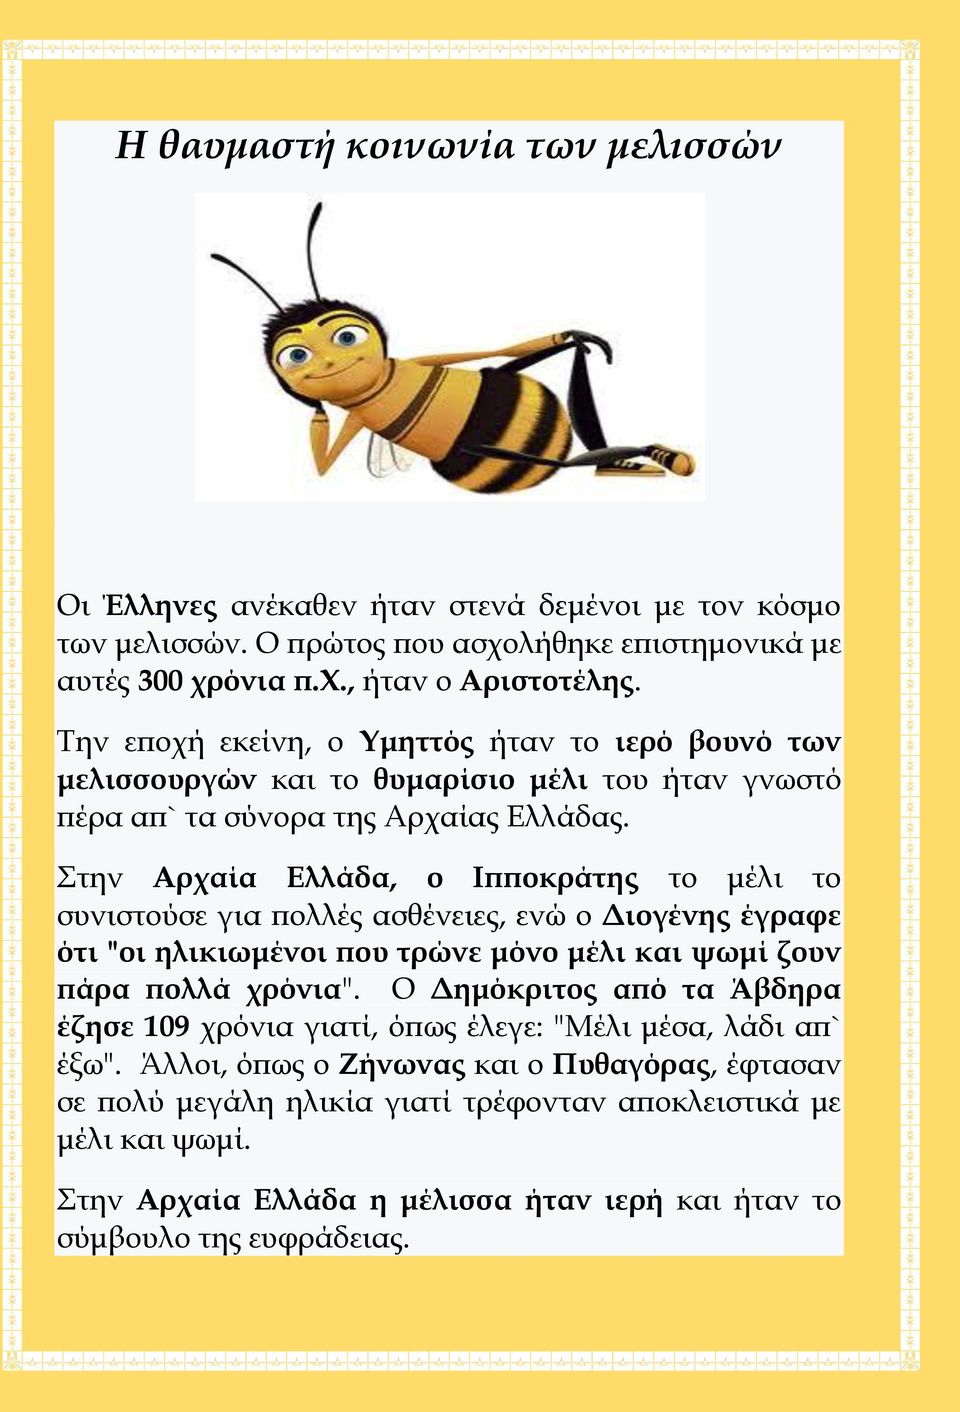 Στην Αρχαία Ελλάδα, ο Ιπποκράτης το μέλι το συνιστούσε για πολλές ασθένειες, ενώ ο Διογένης έγραφε ότι "οι ηλικιωμένοι που τρώνε μόνο μέλι και ψωμί ζουν πάρα πολλά χρόνια".